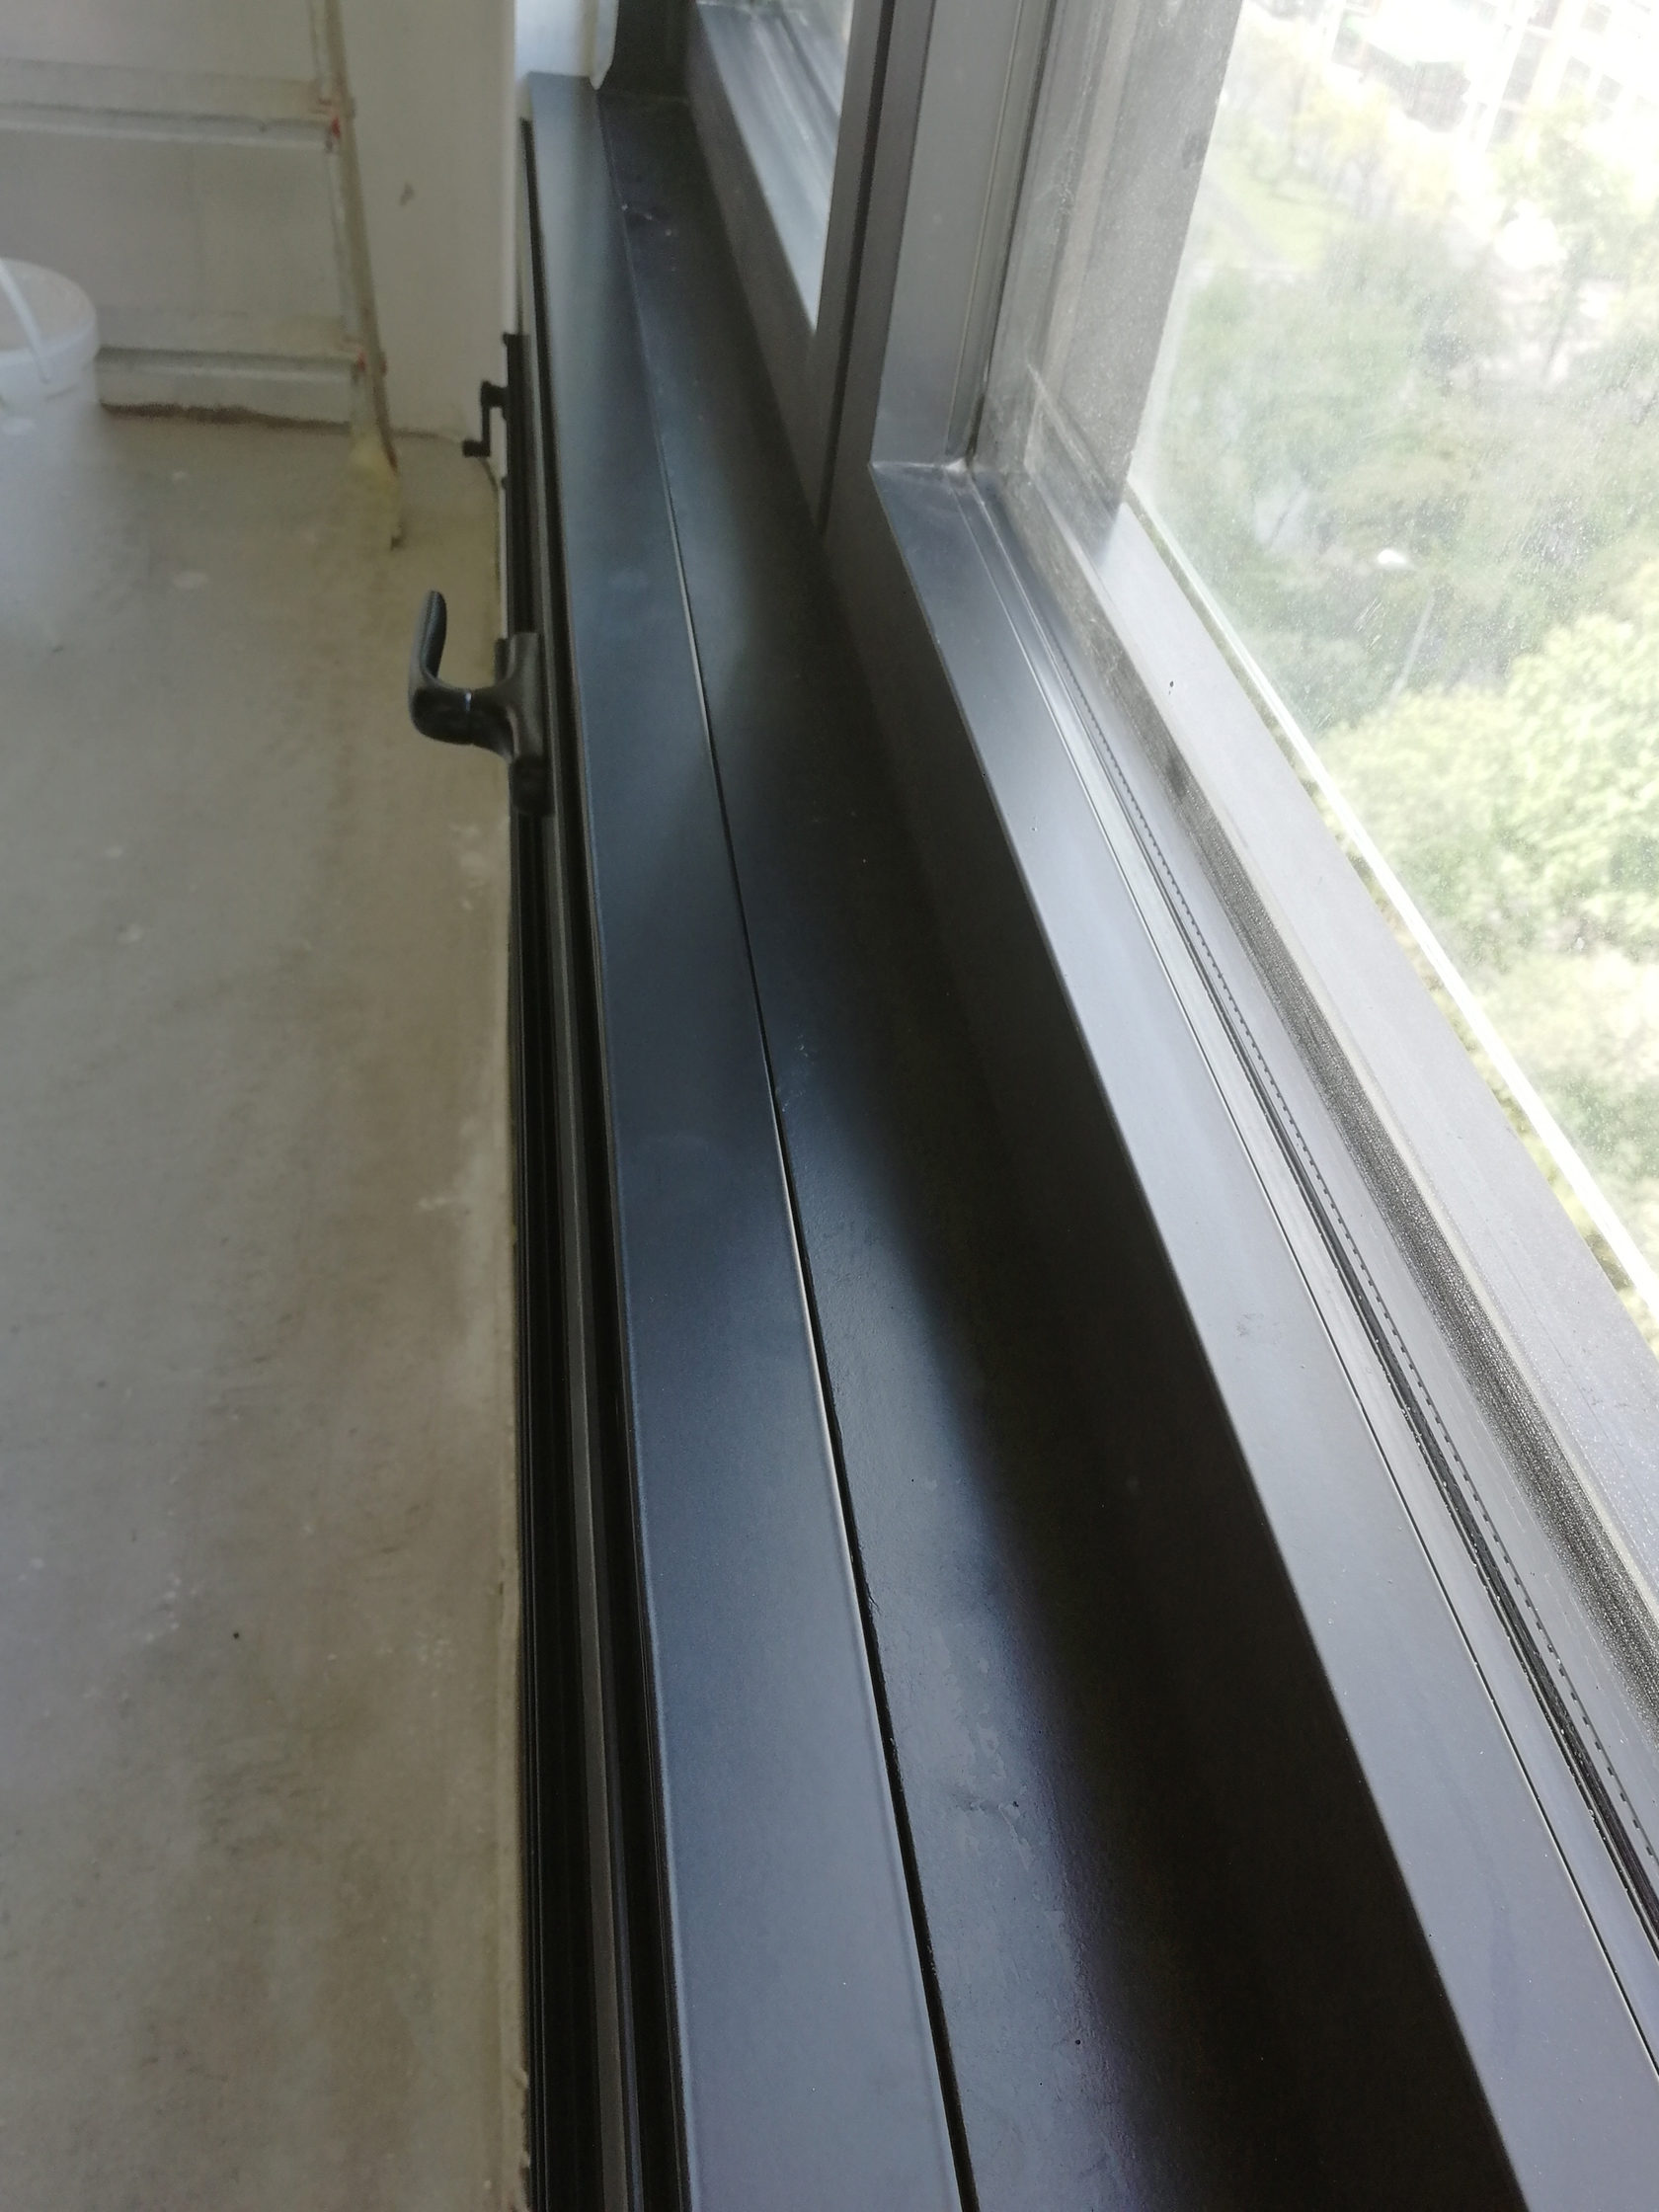 Если внешний блок кондиционера вынесен на балкон, необходимо обеспечить достаточное его охлаждение и проветривание. Установите вентиляционные решетки с регулировкой.